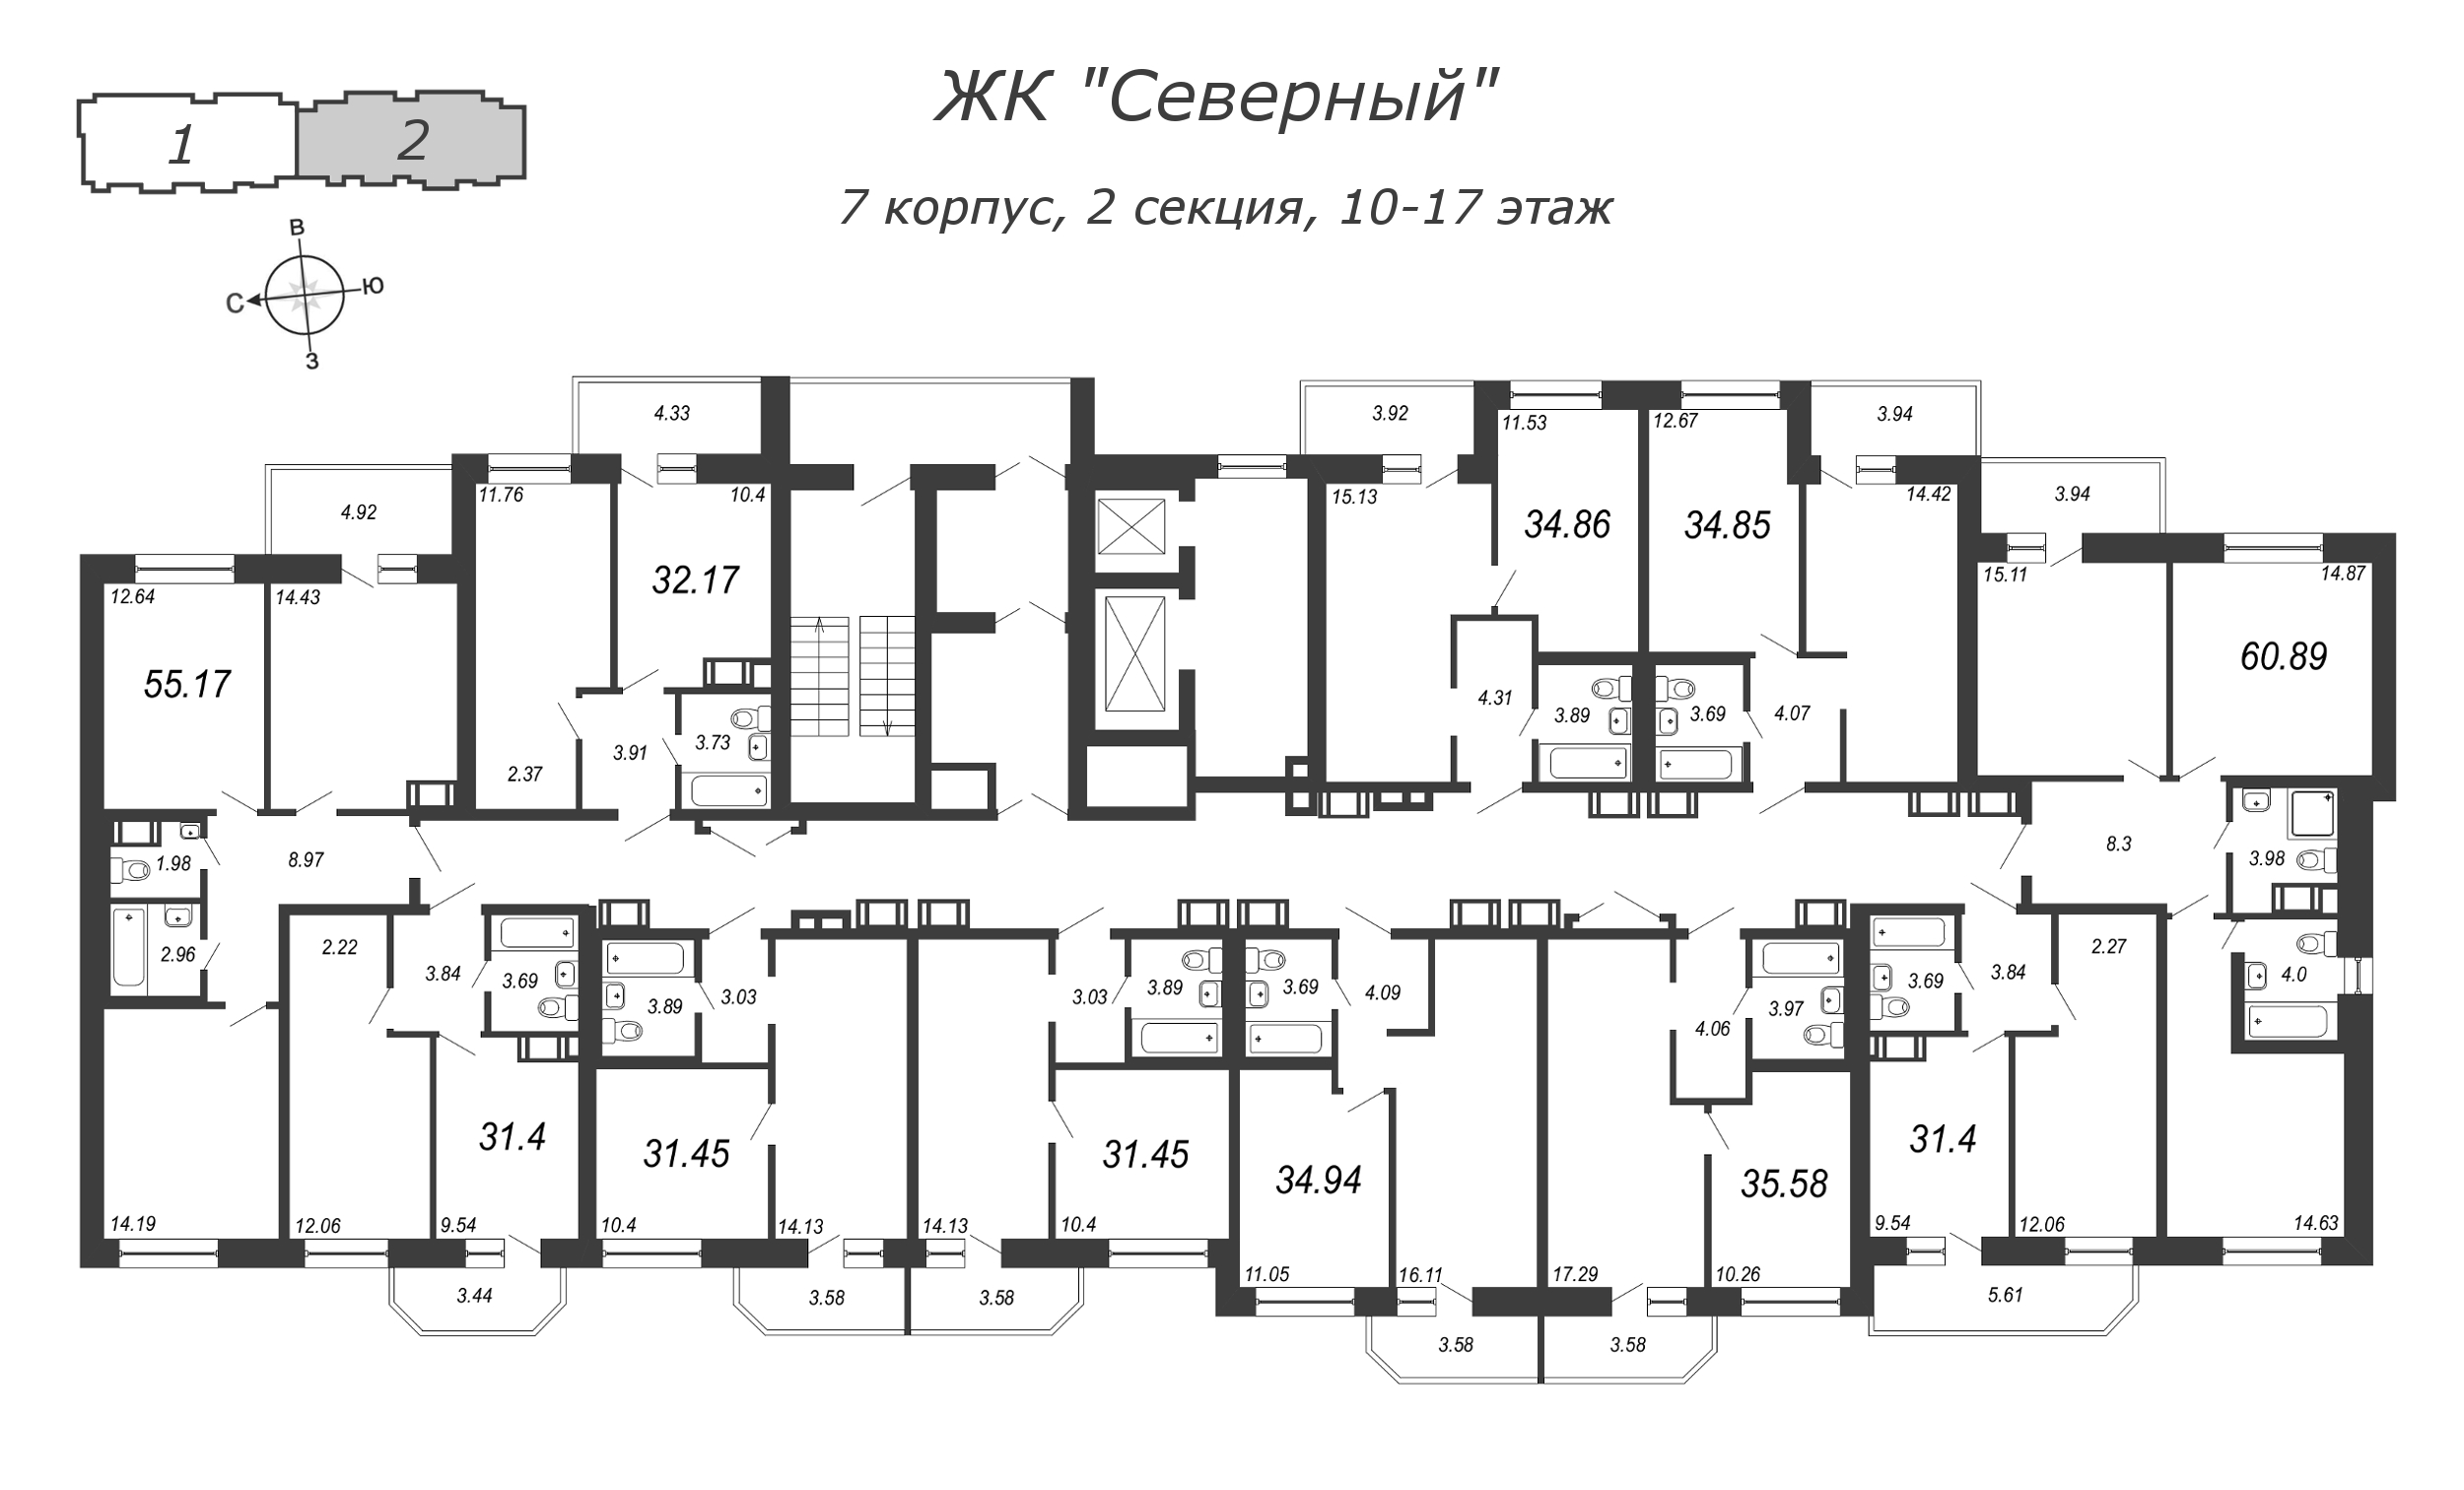 3-комнатная (Евро) квартира, 60.89 м² в ЖК "Северный" - планировка этажа